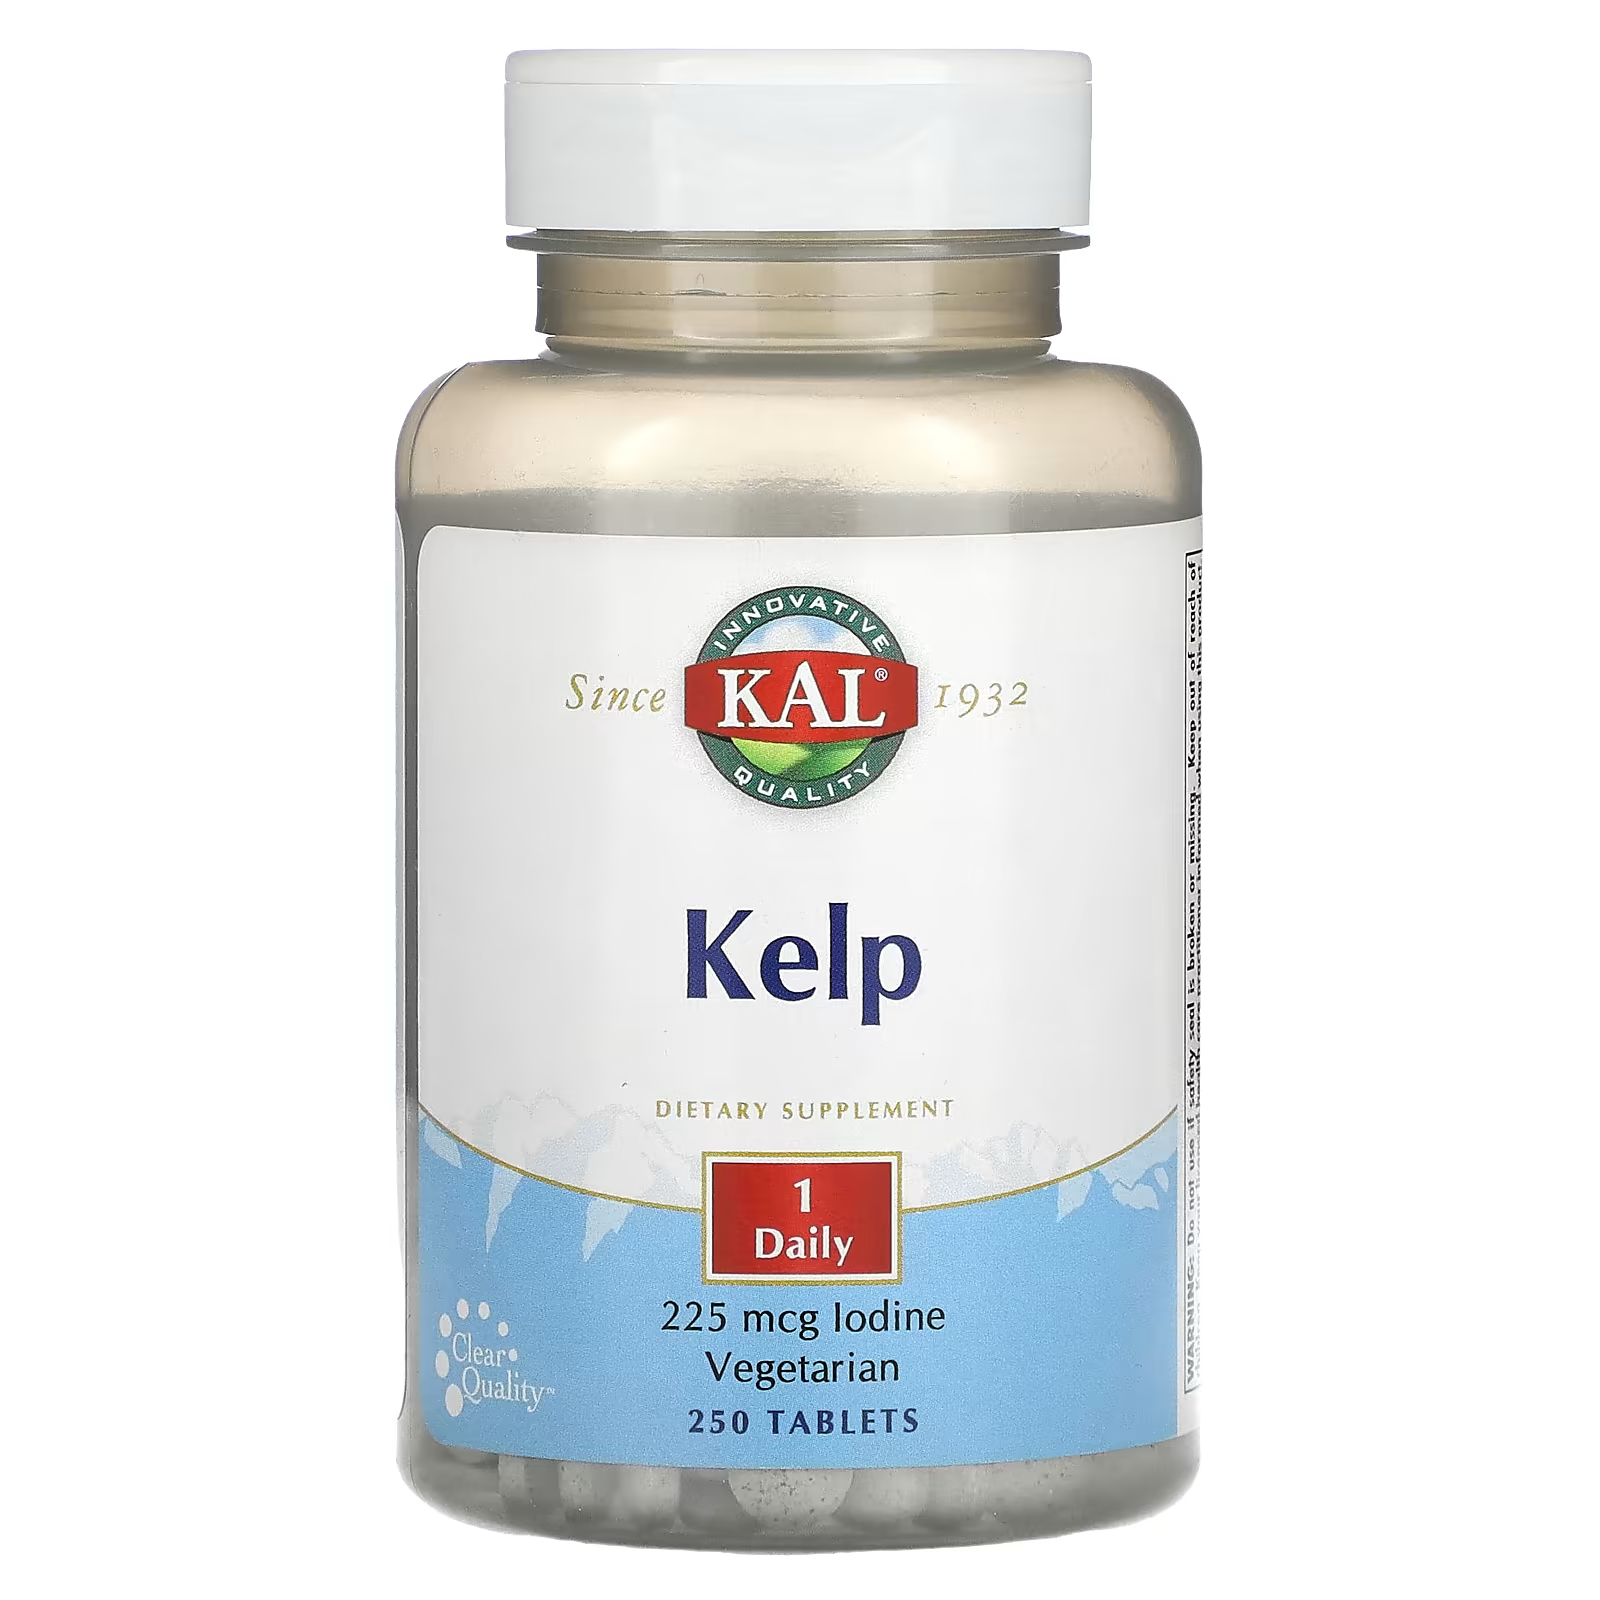 Пищевая добавка Kal келп, 250 таблеток